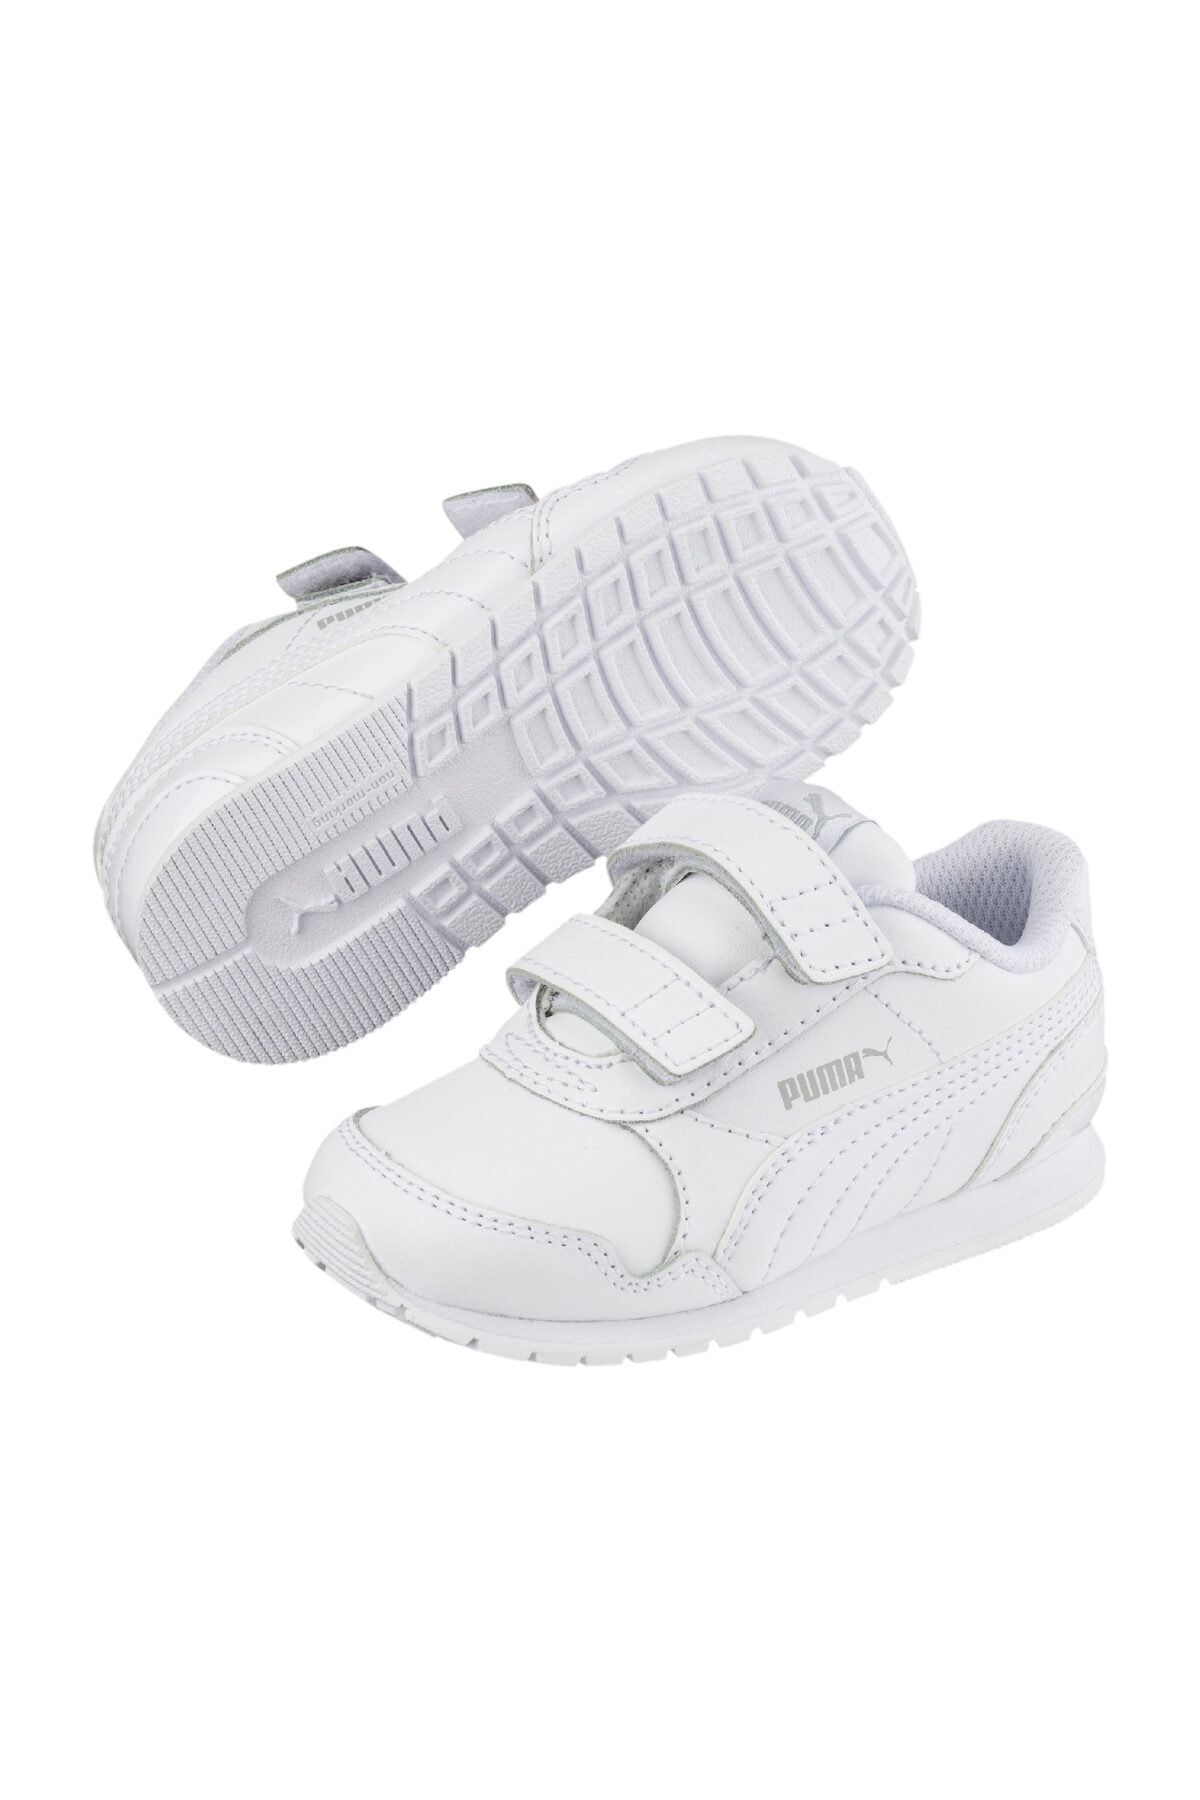 Puma ST RUNNER V2 L V INF Beyaz Erkek Çocuk Sneaker Ayakkabı 100352527